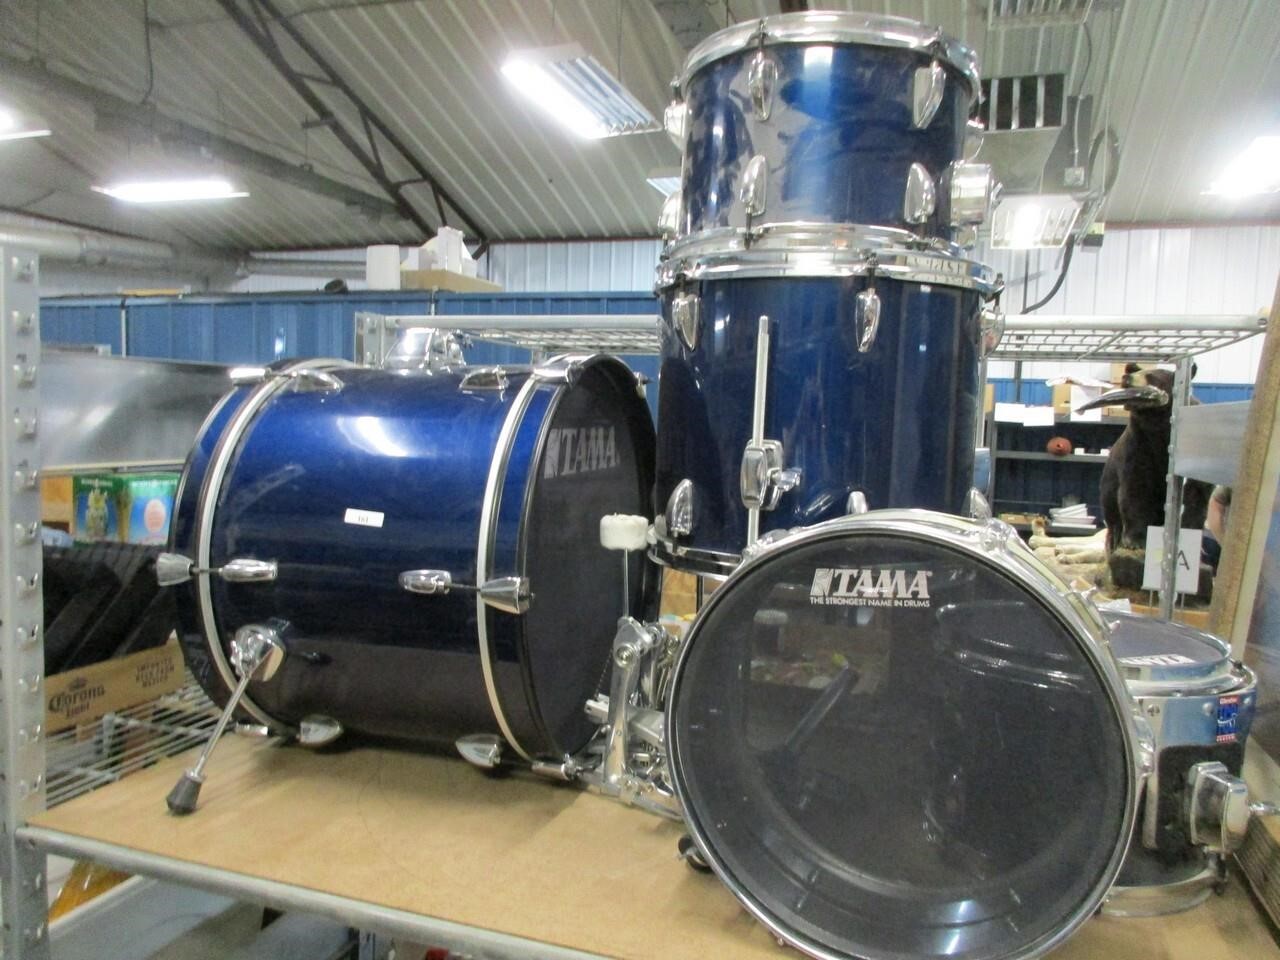 Junior Tama drum set for practicing